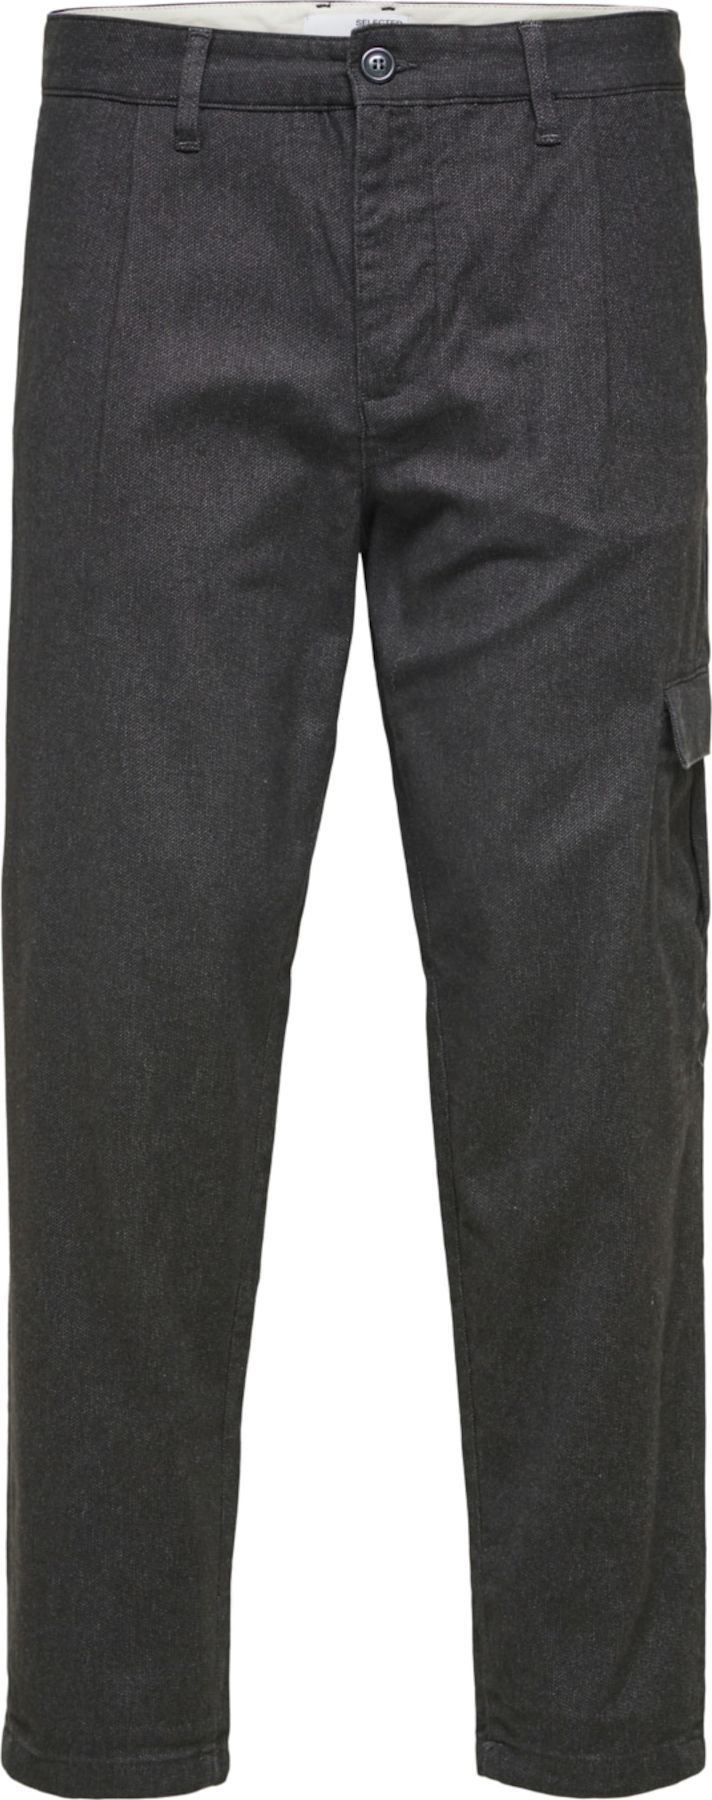 SELECTED HOMME Kalhoty se sklady v pase černý melír